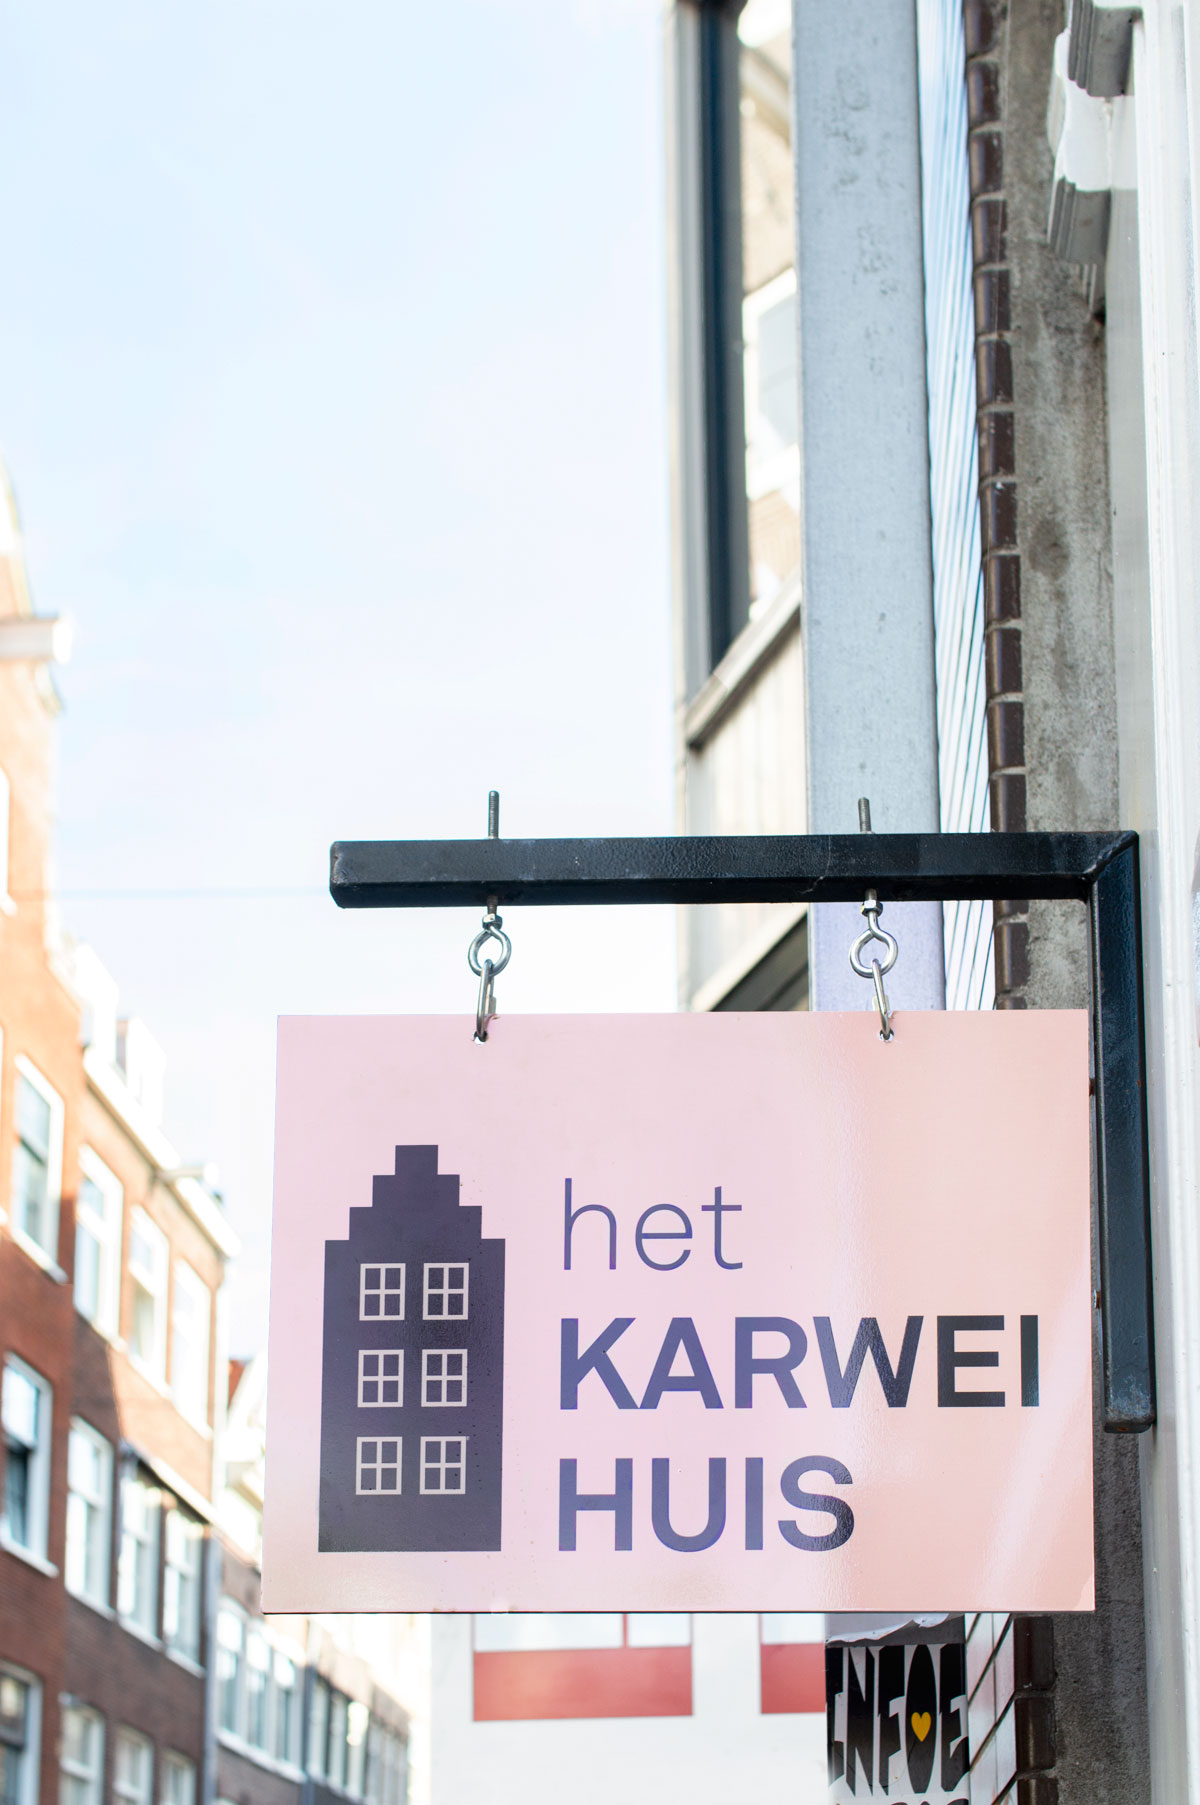 Amsterdam Karwei huis - Tanja van Hoogdalem